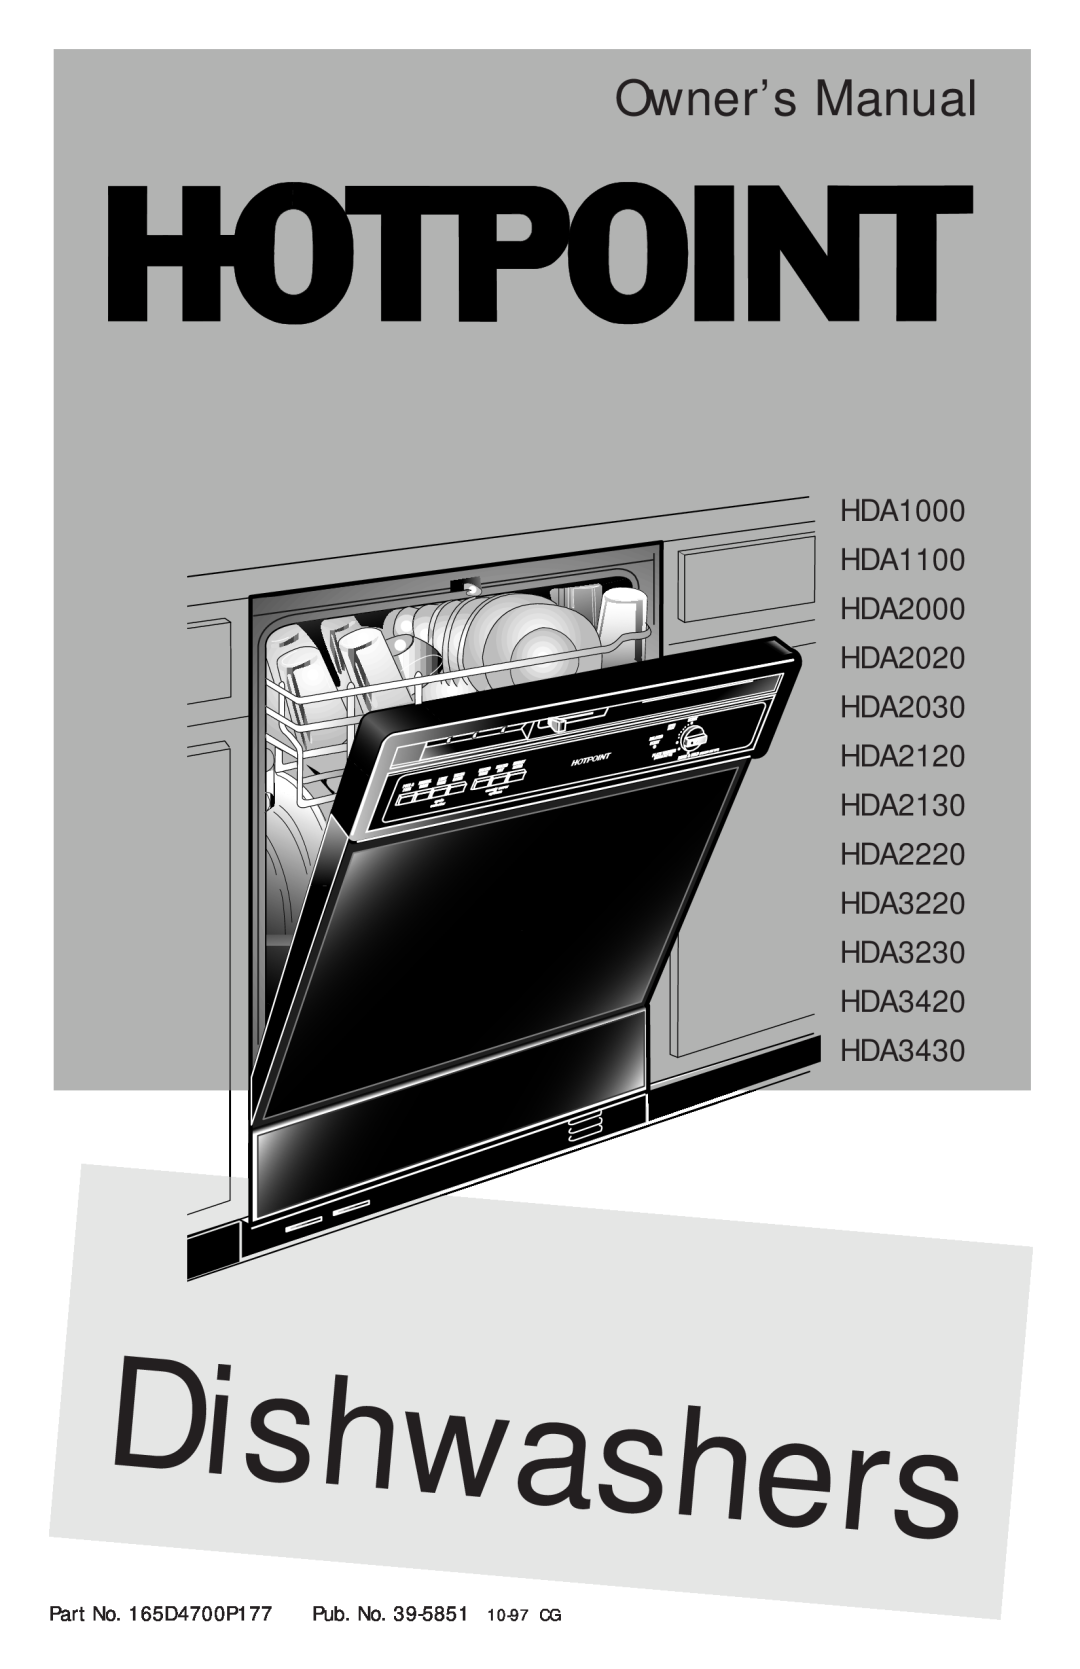 Hotpoint owner manual HDA1000 HDA1100 HDA2000 HDA2020 HDA2030 HDA2120 HDA2130 HDA2220, HDA3220 HDA3230 HDA3420 HDA3430 